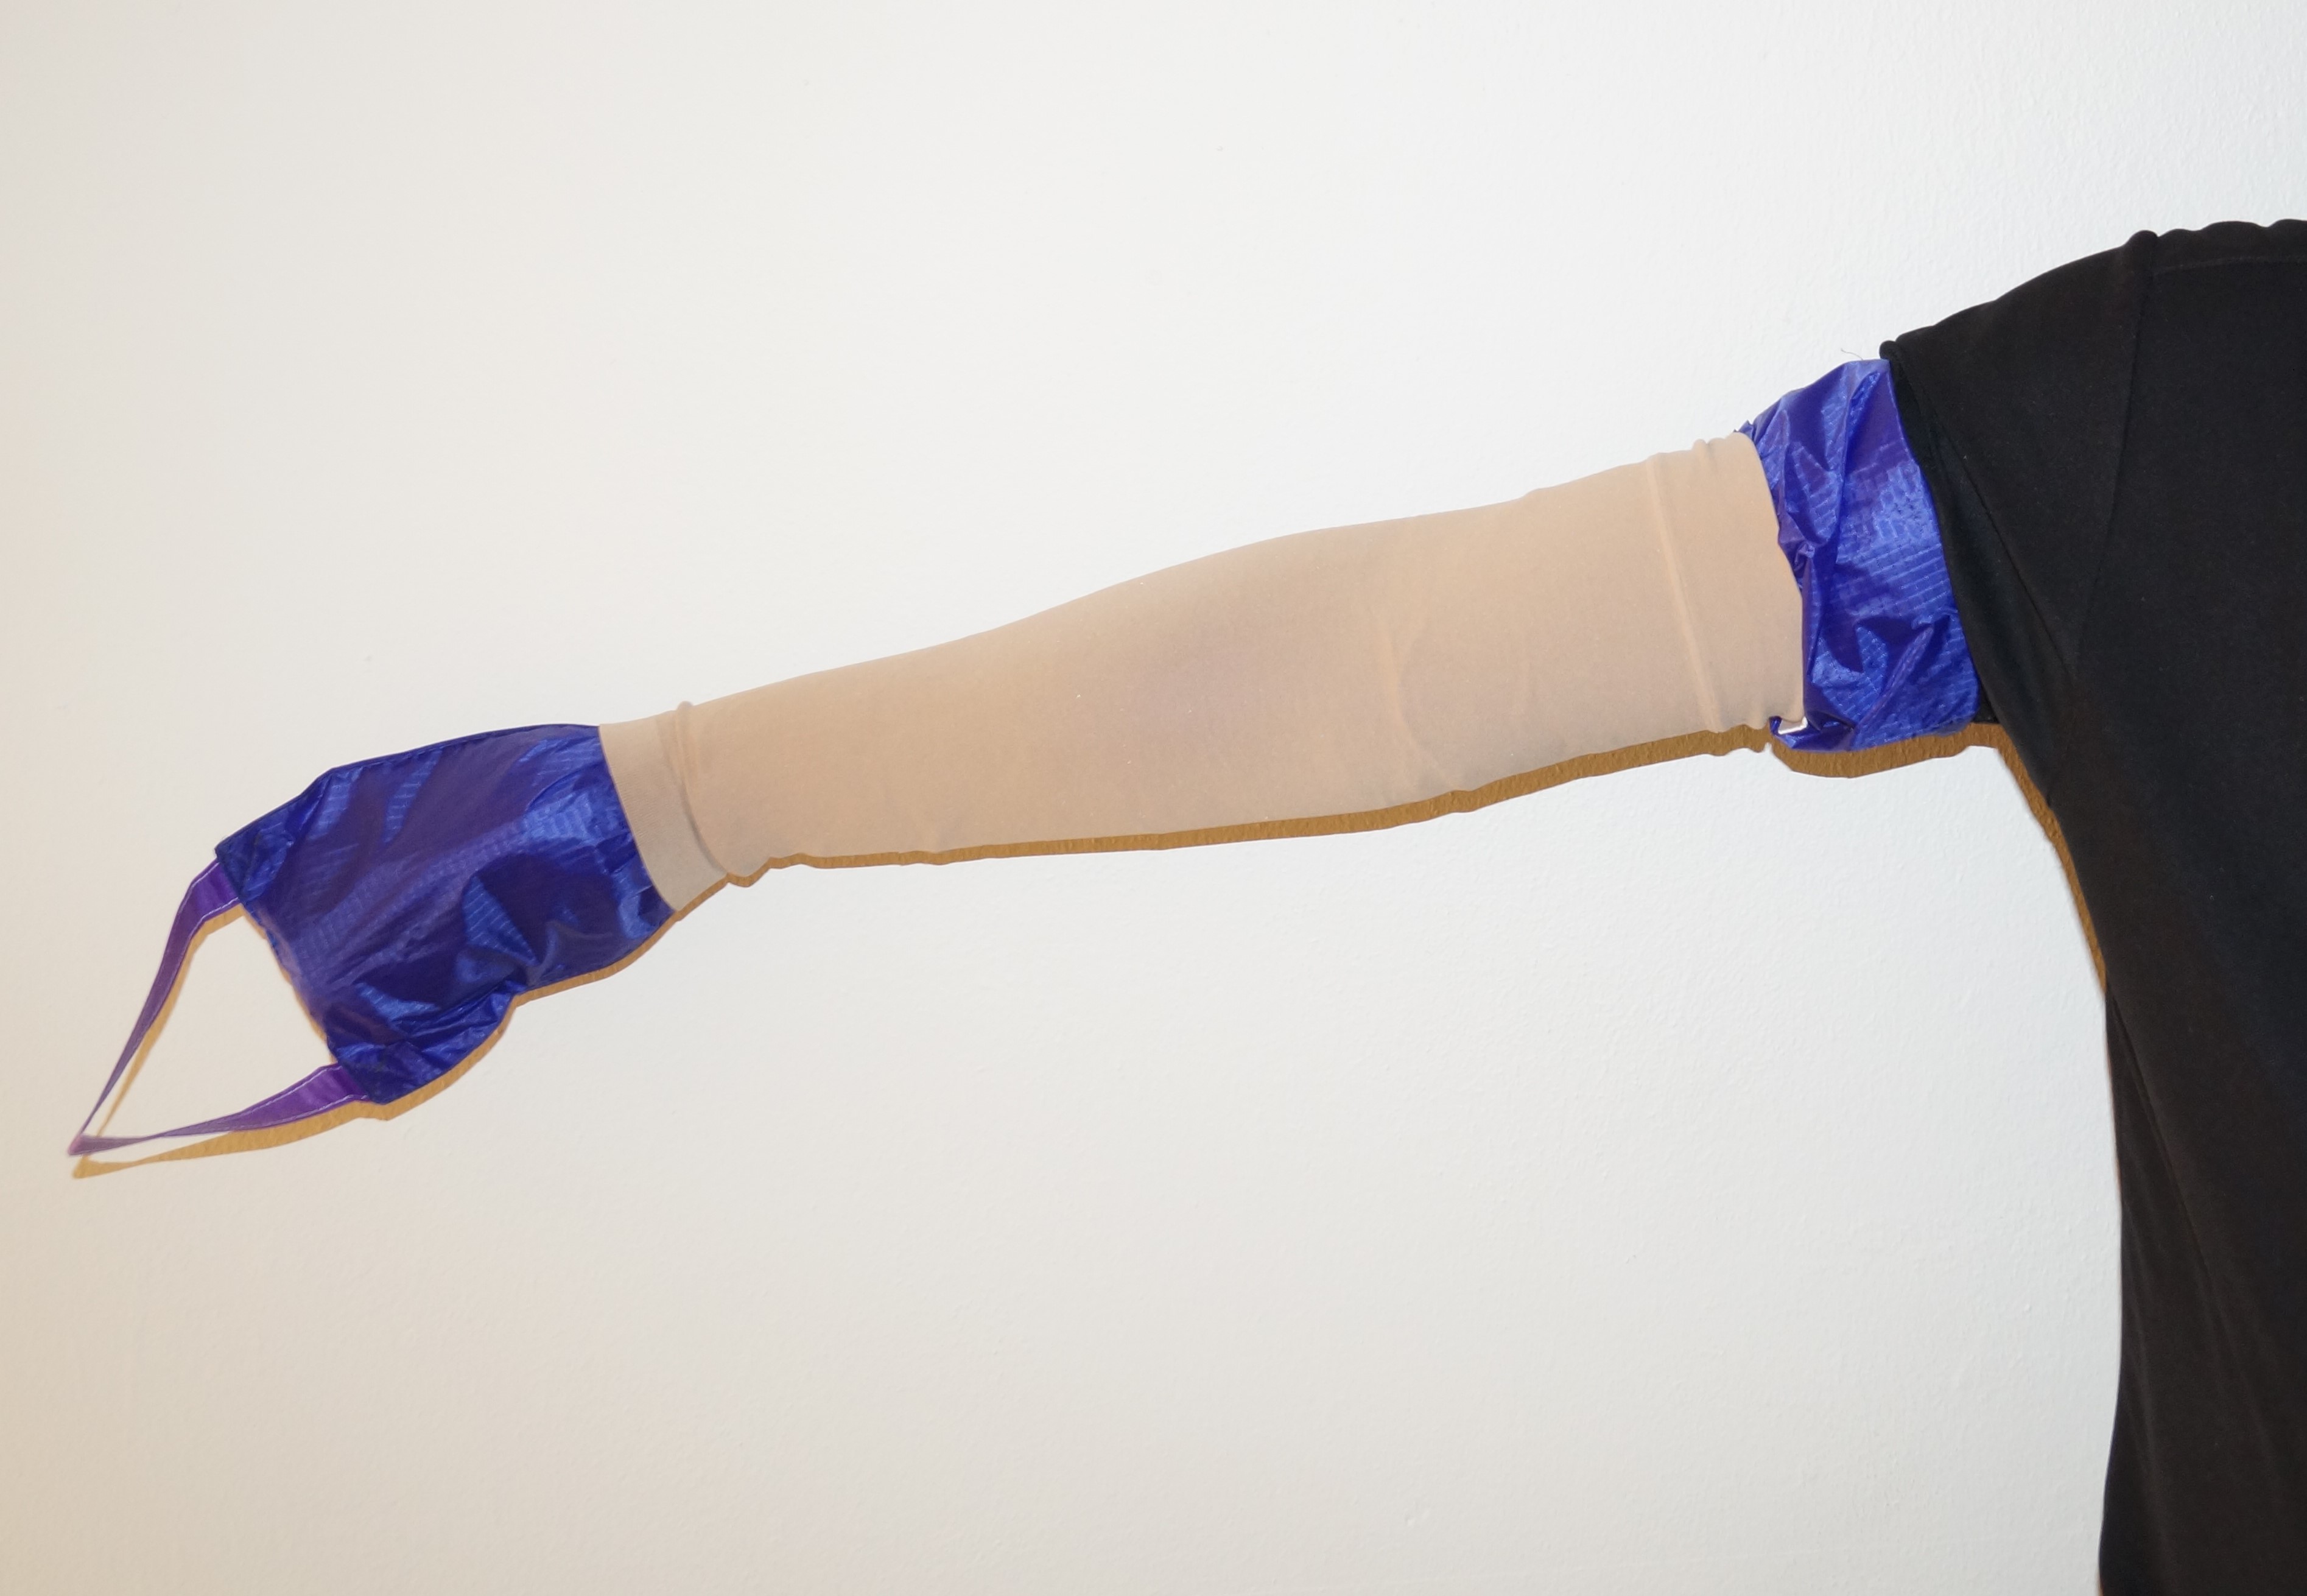 SLIP ARM Til på- og af støttestrømper på armen fra Danish CARE Supply - Hjælpemiddelbasen